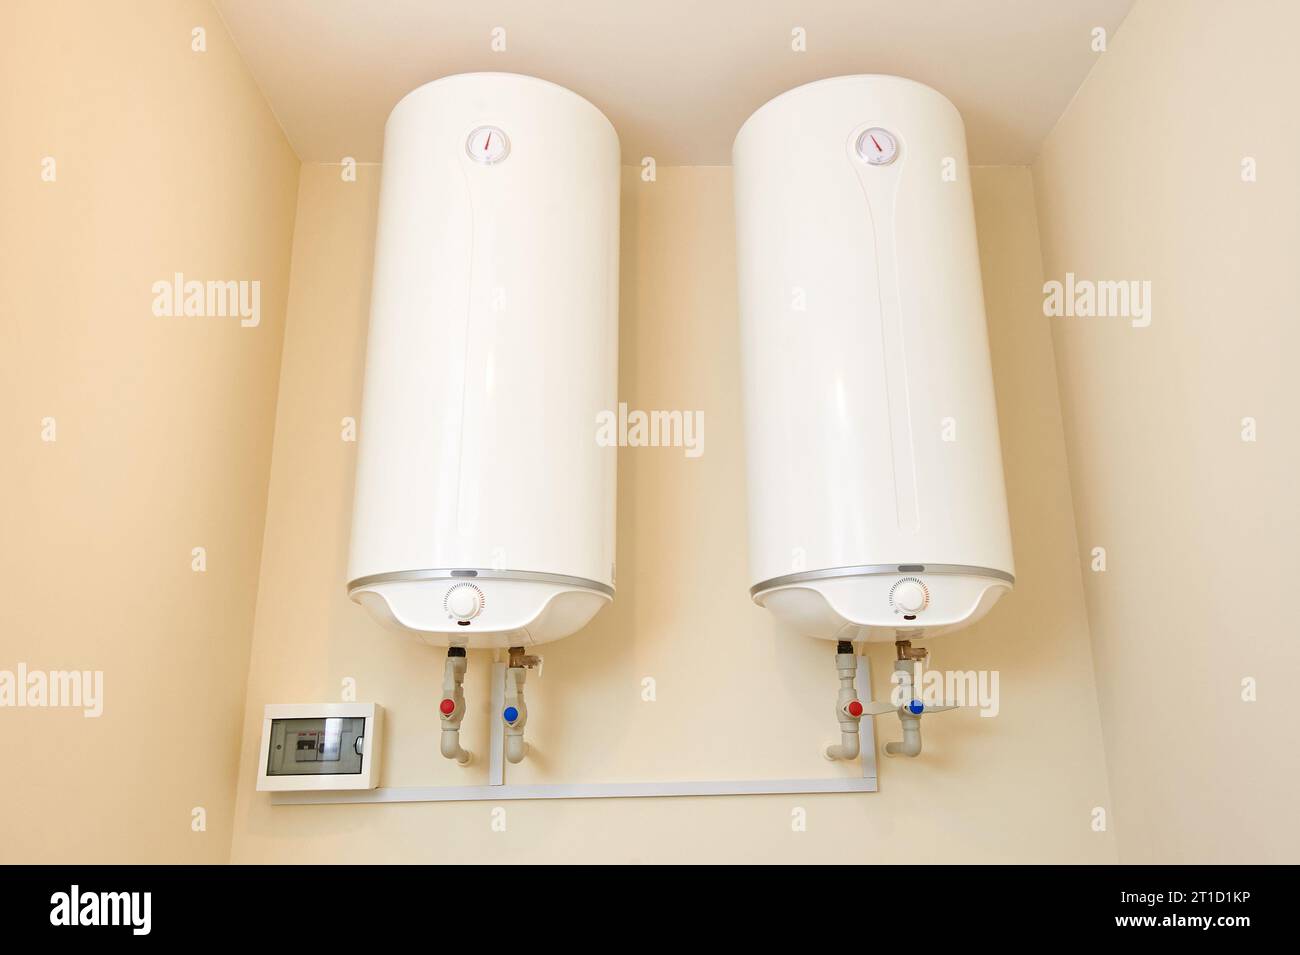 Zwei elektrische Warmwasserbereiter an der Wand. An der Hauswand montierte zwei Wasserheizkessel. Keine Personen. Stockfoto